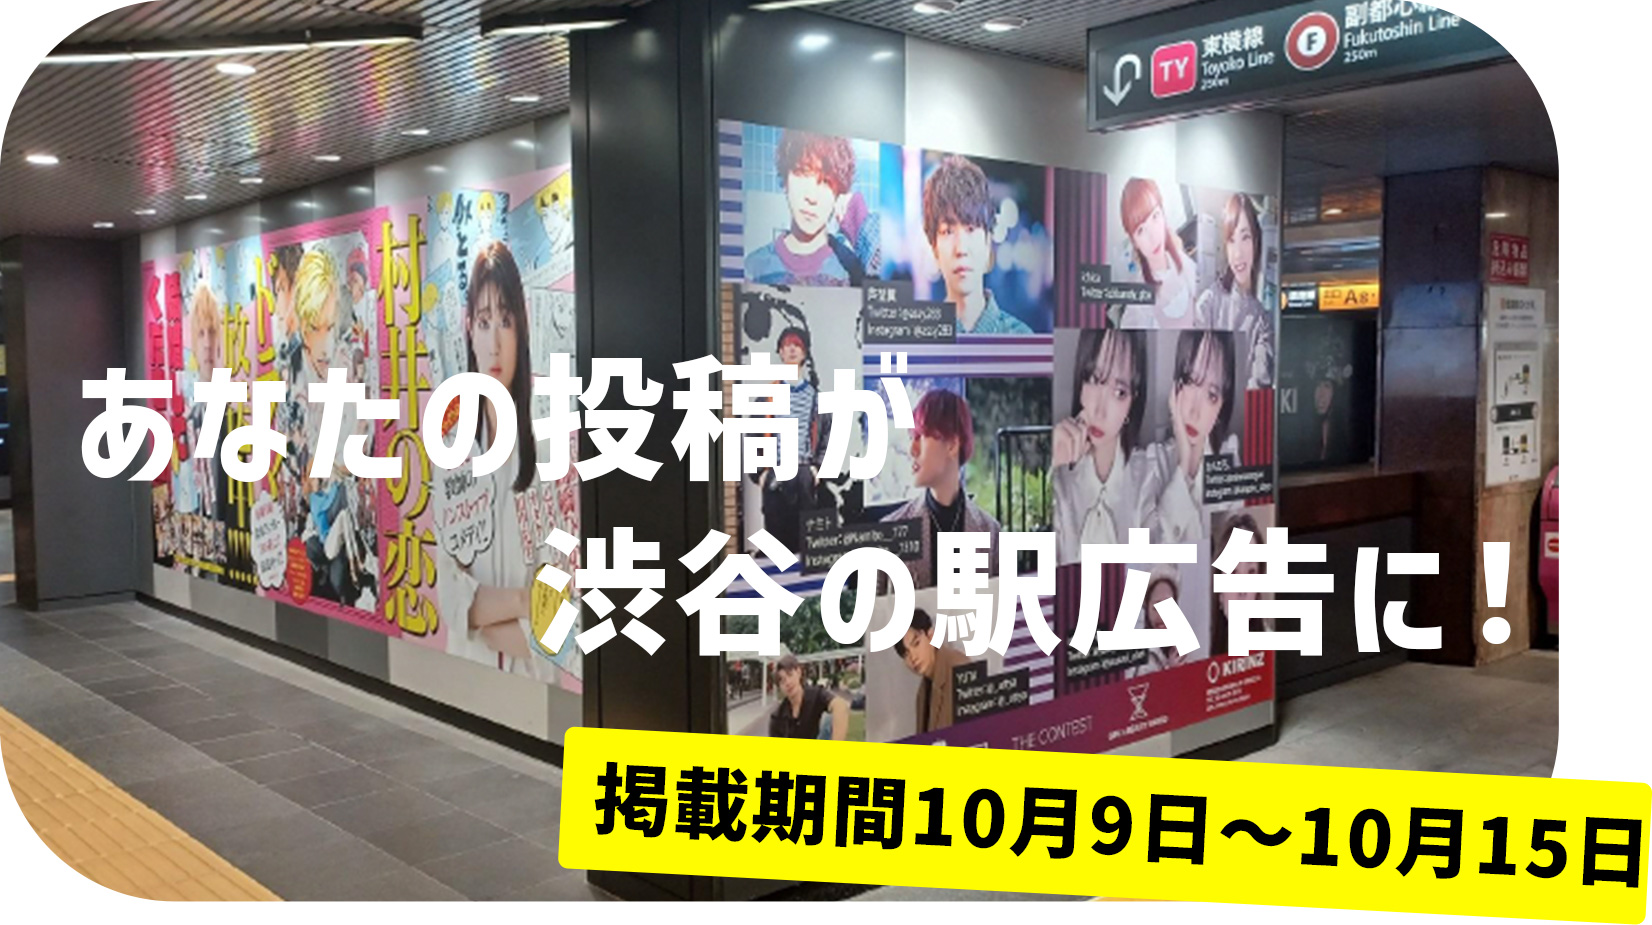 あなたの投稿が渋谷の駅広告に！
掲載期間10月9日〜10月15日